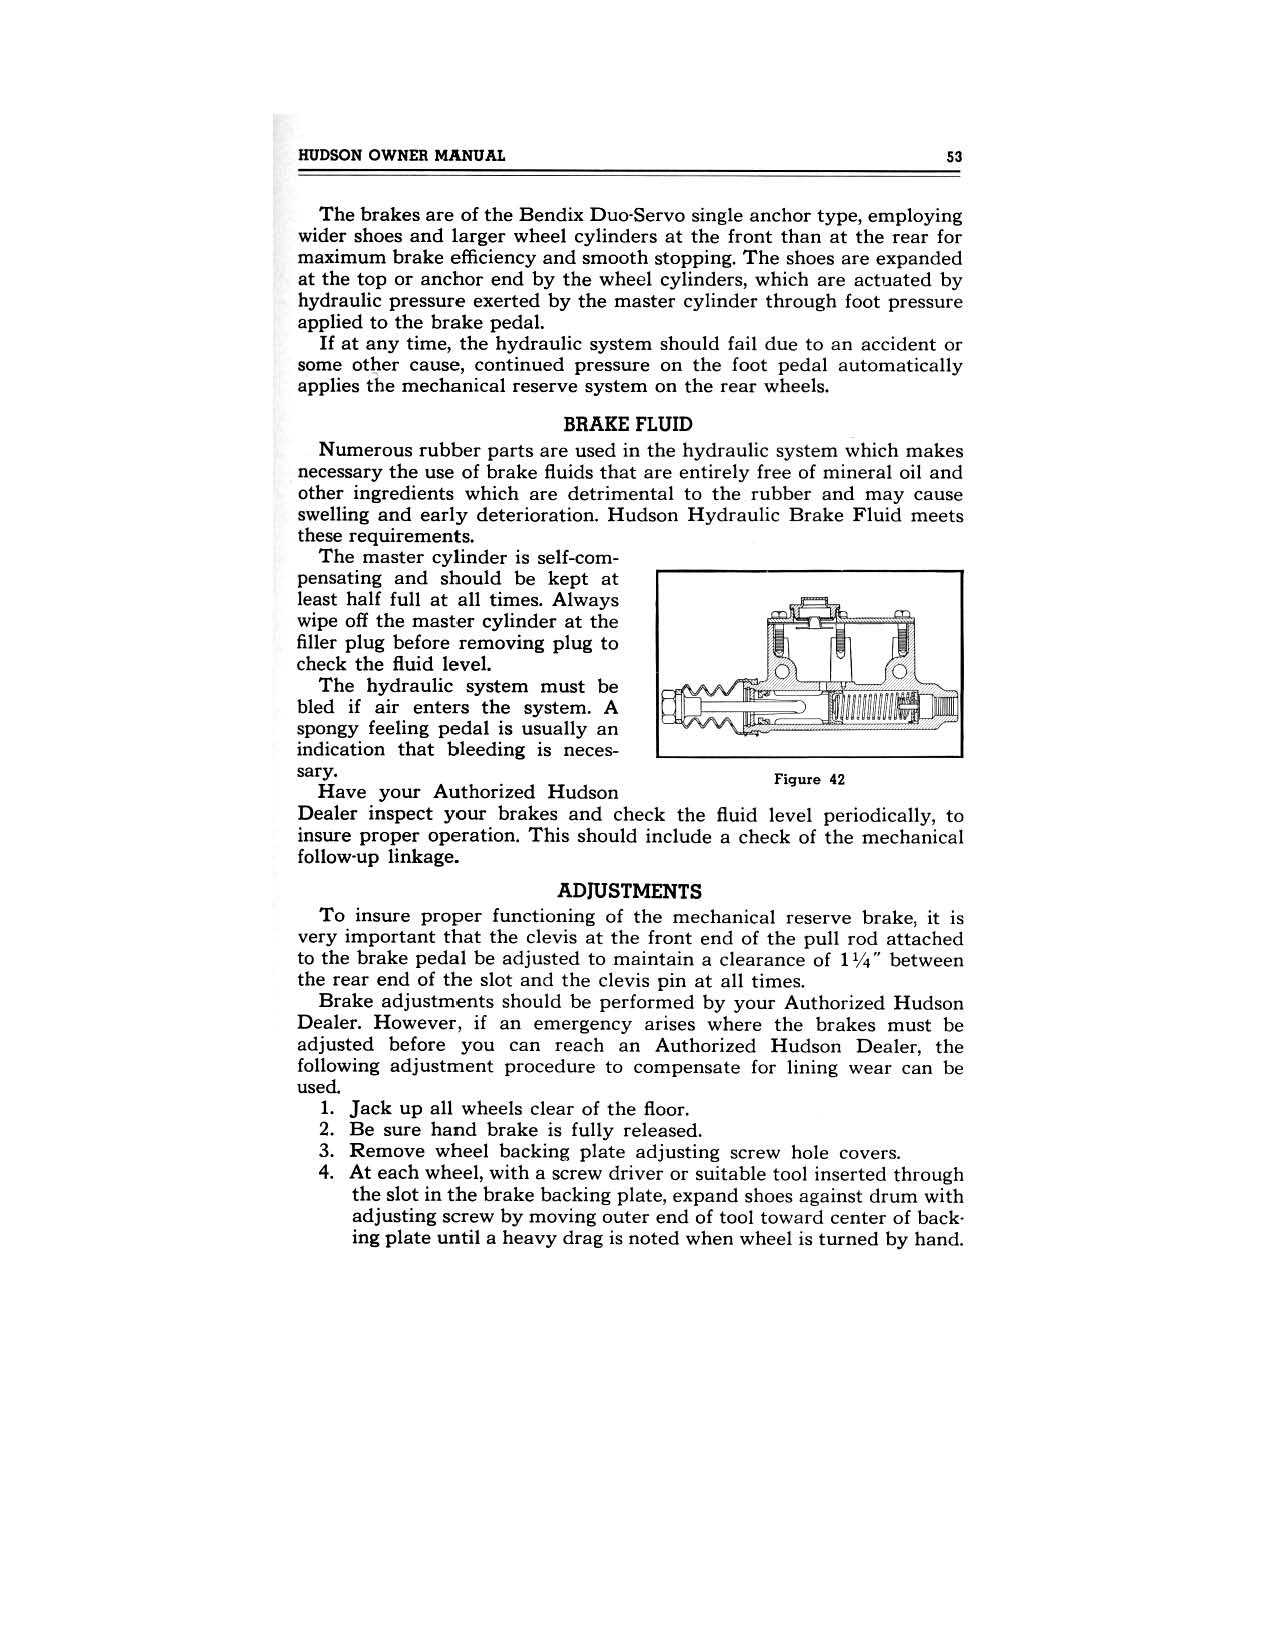 1949 Hudson Owners Manual-55